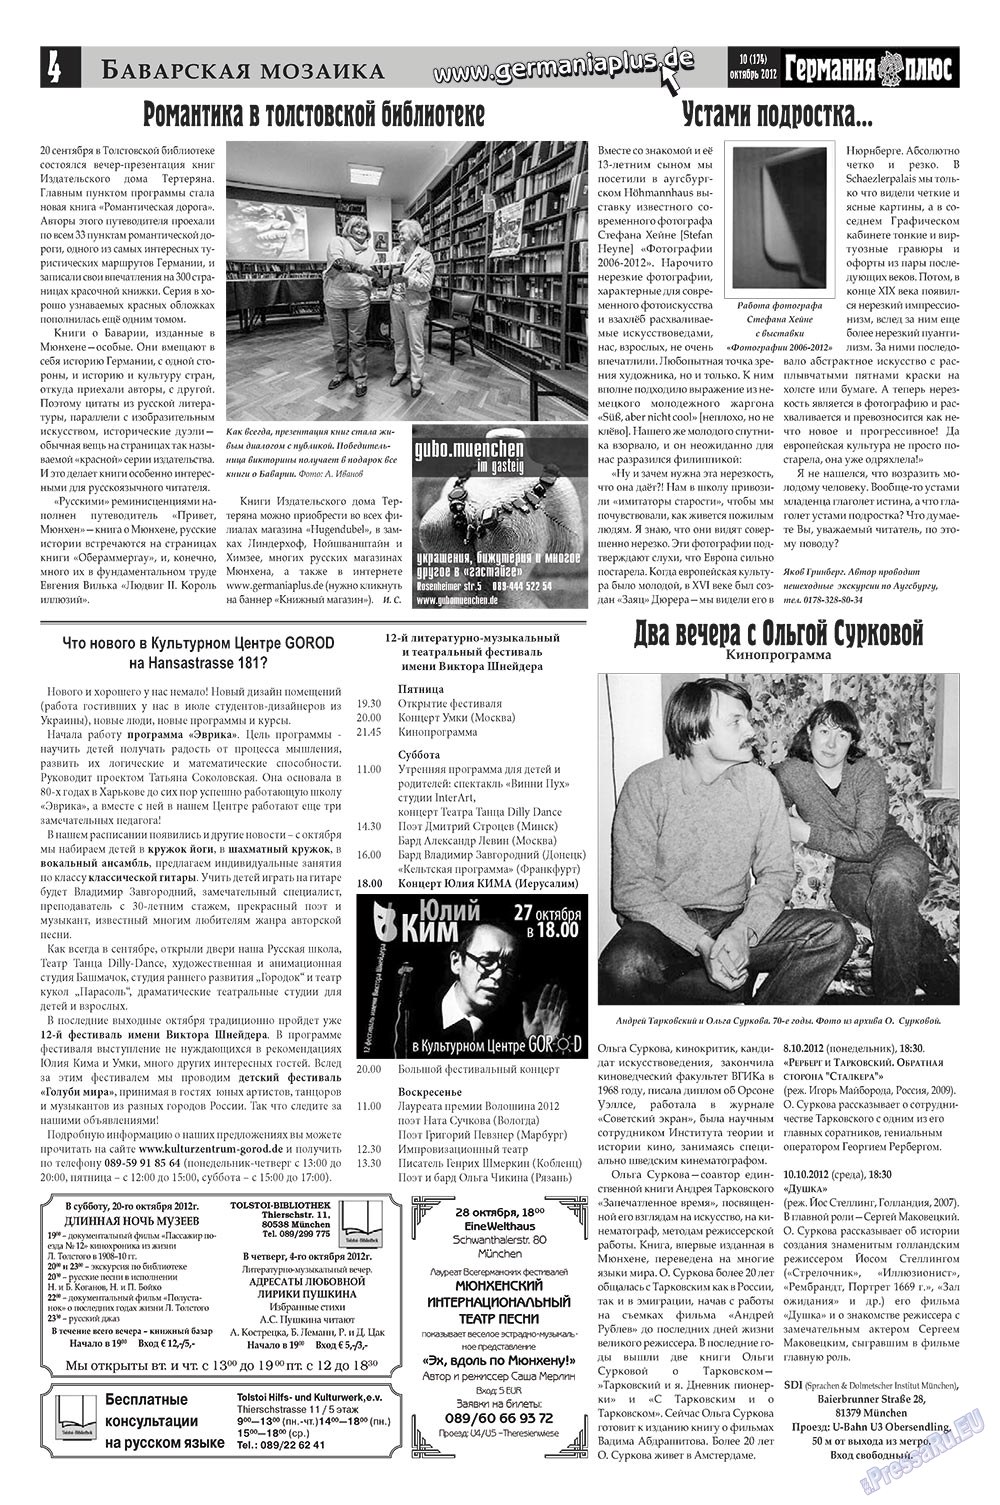 Германия плюс, газета. 2012 №10 стр.4